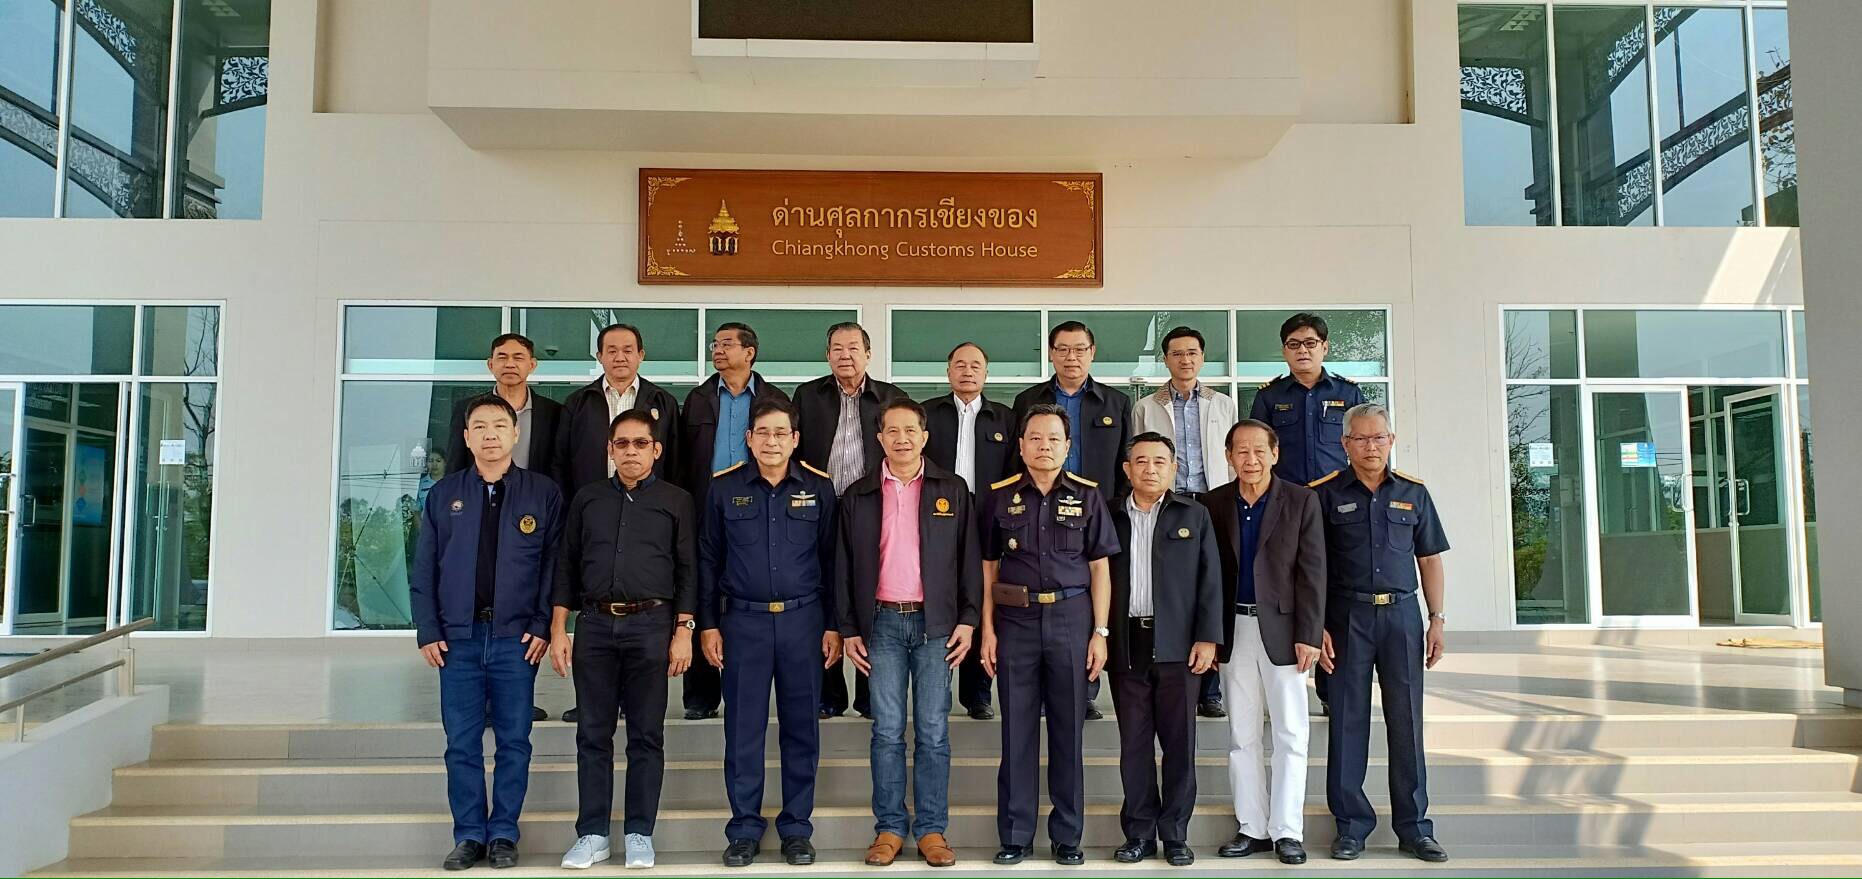 24 February 2019, at Chiang Khong Customs House, Chiang Rai Province